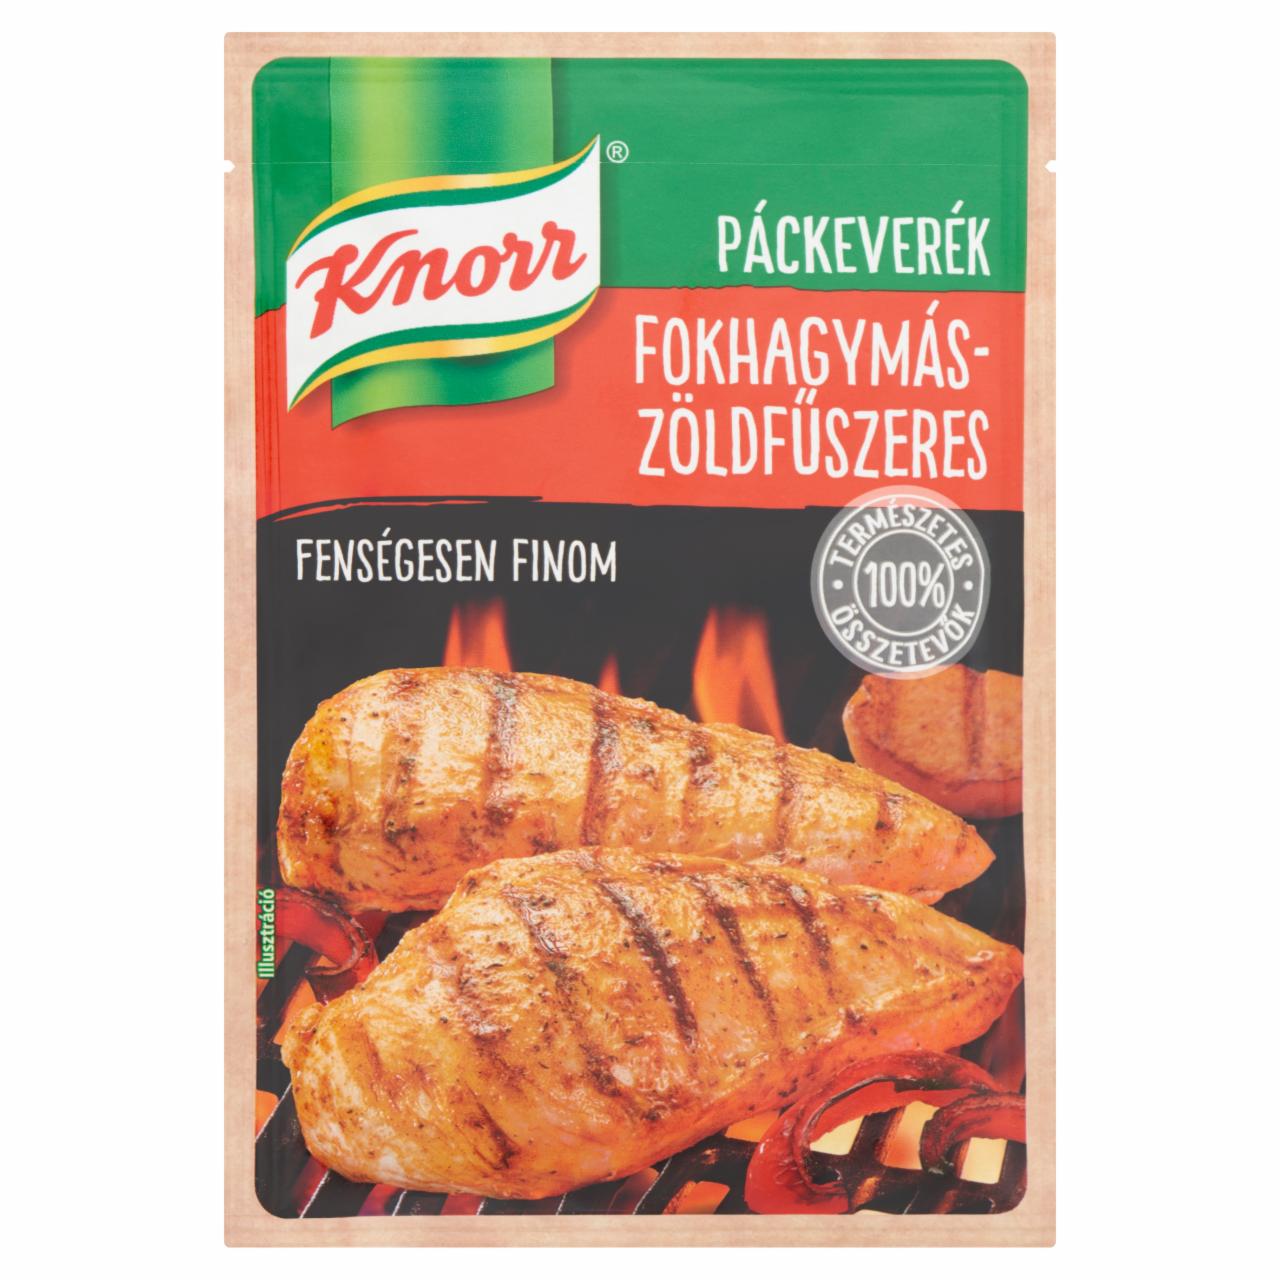 Képek - Knorr fokhagymás-zöldfűszeres páckeverék 35 g